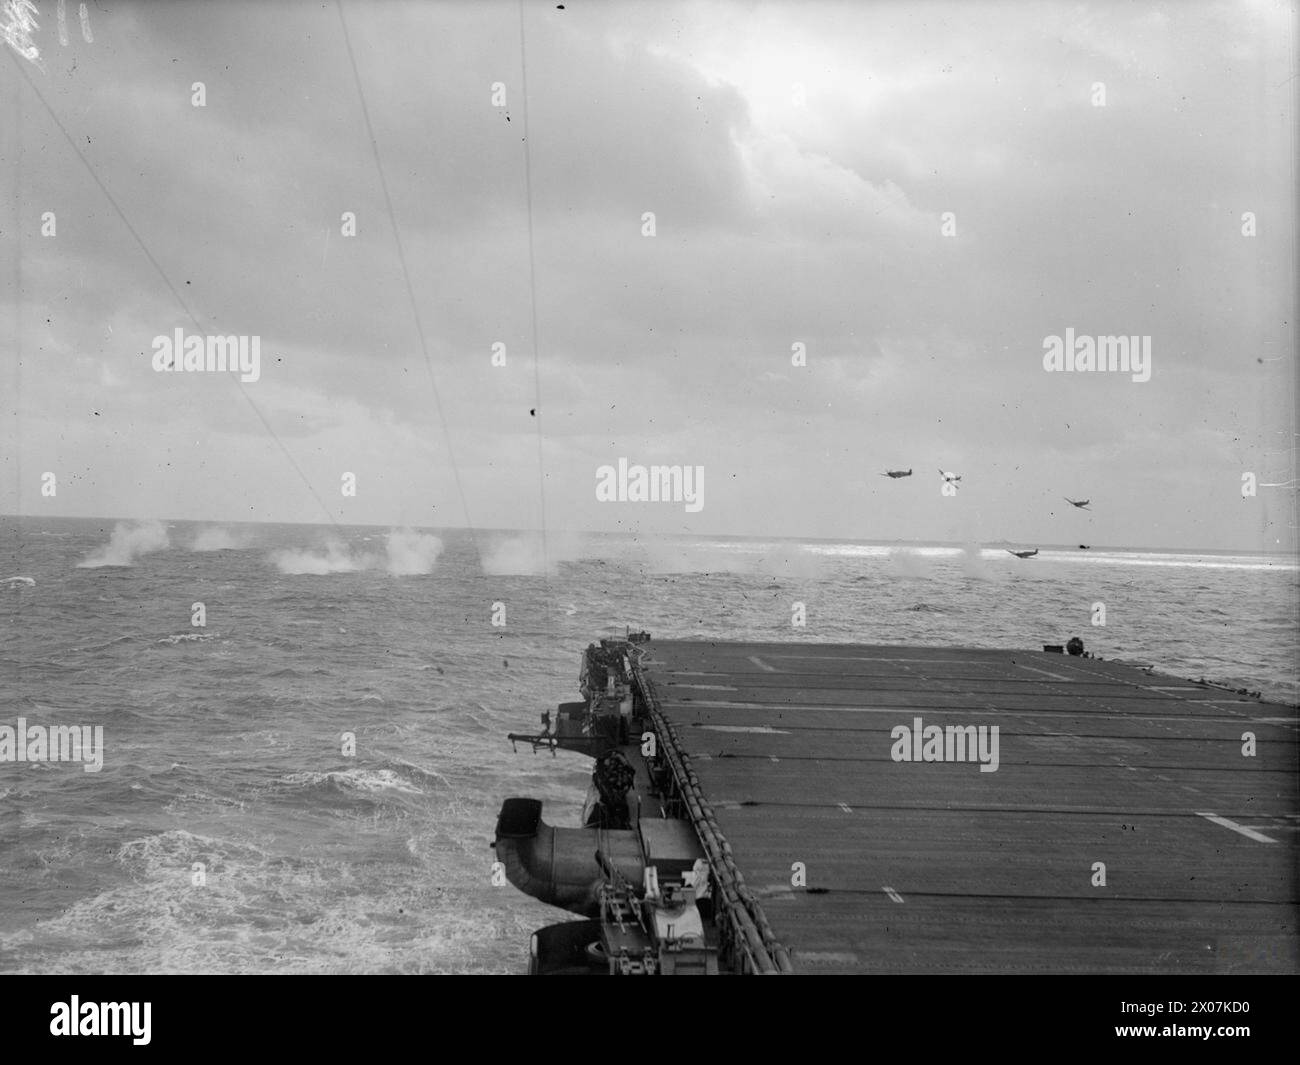 LE ROI FAROUK VISITE LE PORTE-AVIONS D'ESCORTE BRITANNIQUE. MARS 1945, À BORD DU HMS HUNTER, ALEXANDRIE, ÉGYPTE. - Les feux de mer du CHASSEUR effectuant une attaque à la bombe sur une cible remorquée à l'est du porte-avions d'escorte Banque D'Images